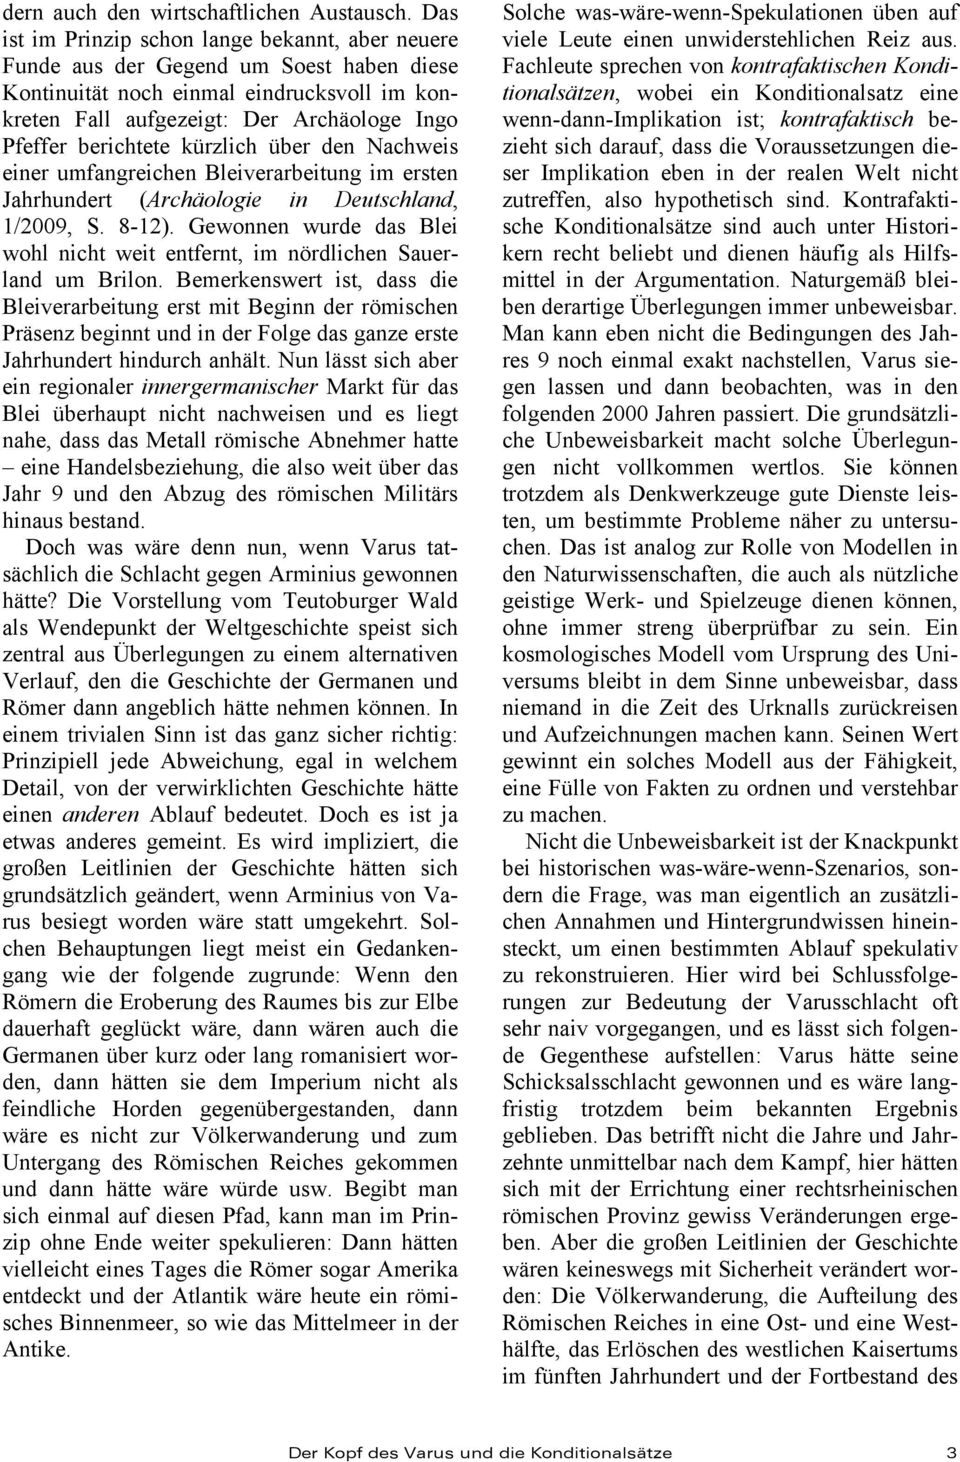 berichtete kürzlich über den Nachweis einer umfangreichen Bleiverarbeitung im ersten Jahrhundert (Archäologie in Deutschland, 1/2009, S. 8-12).